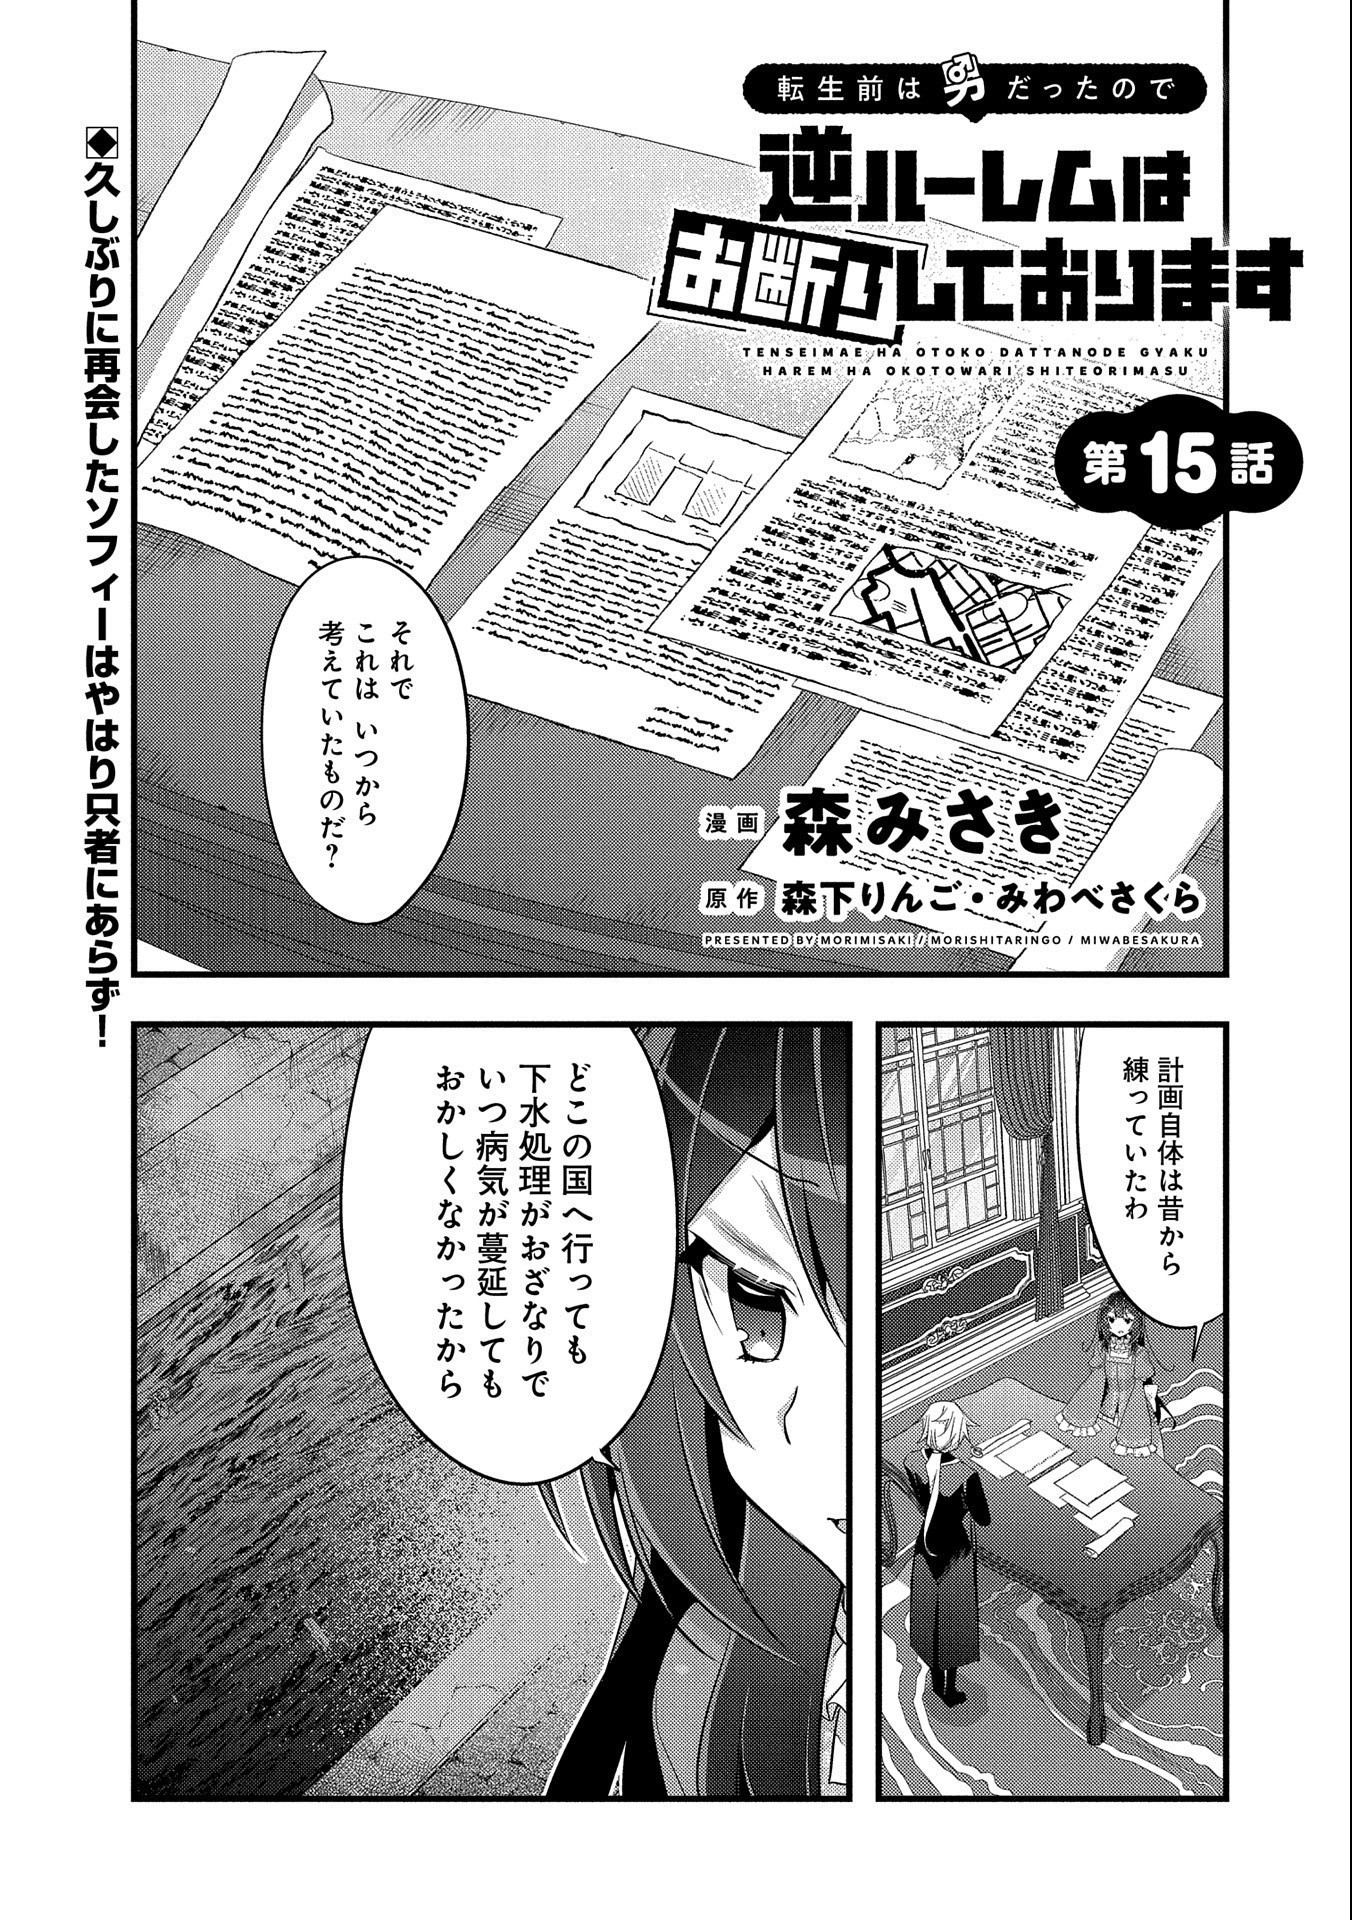 Tensei Mae wa Otoko Datta node Gyaku Harem wa Okotowari Shite Orimasu - Chapter 15 - Page 1